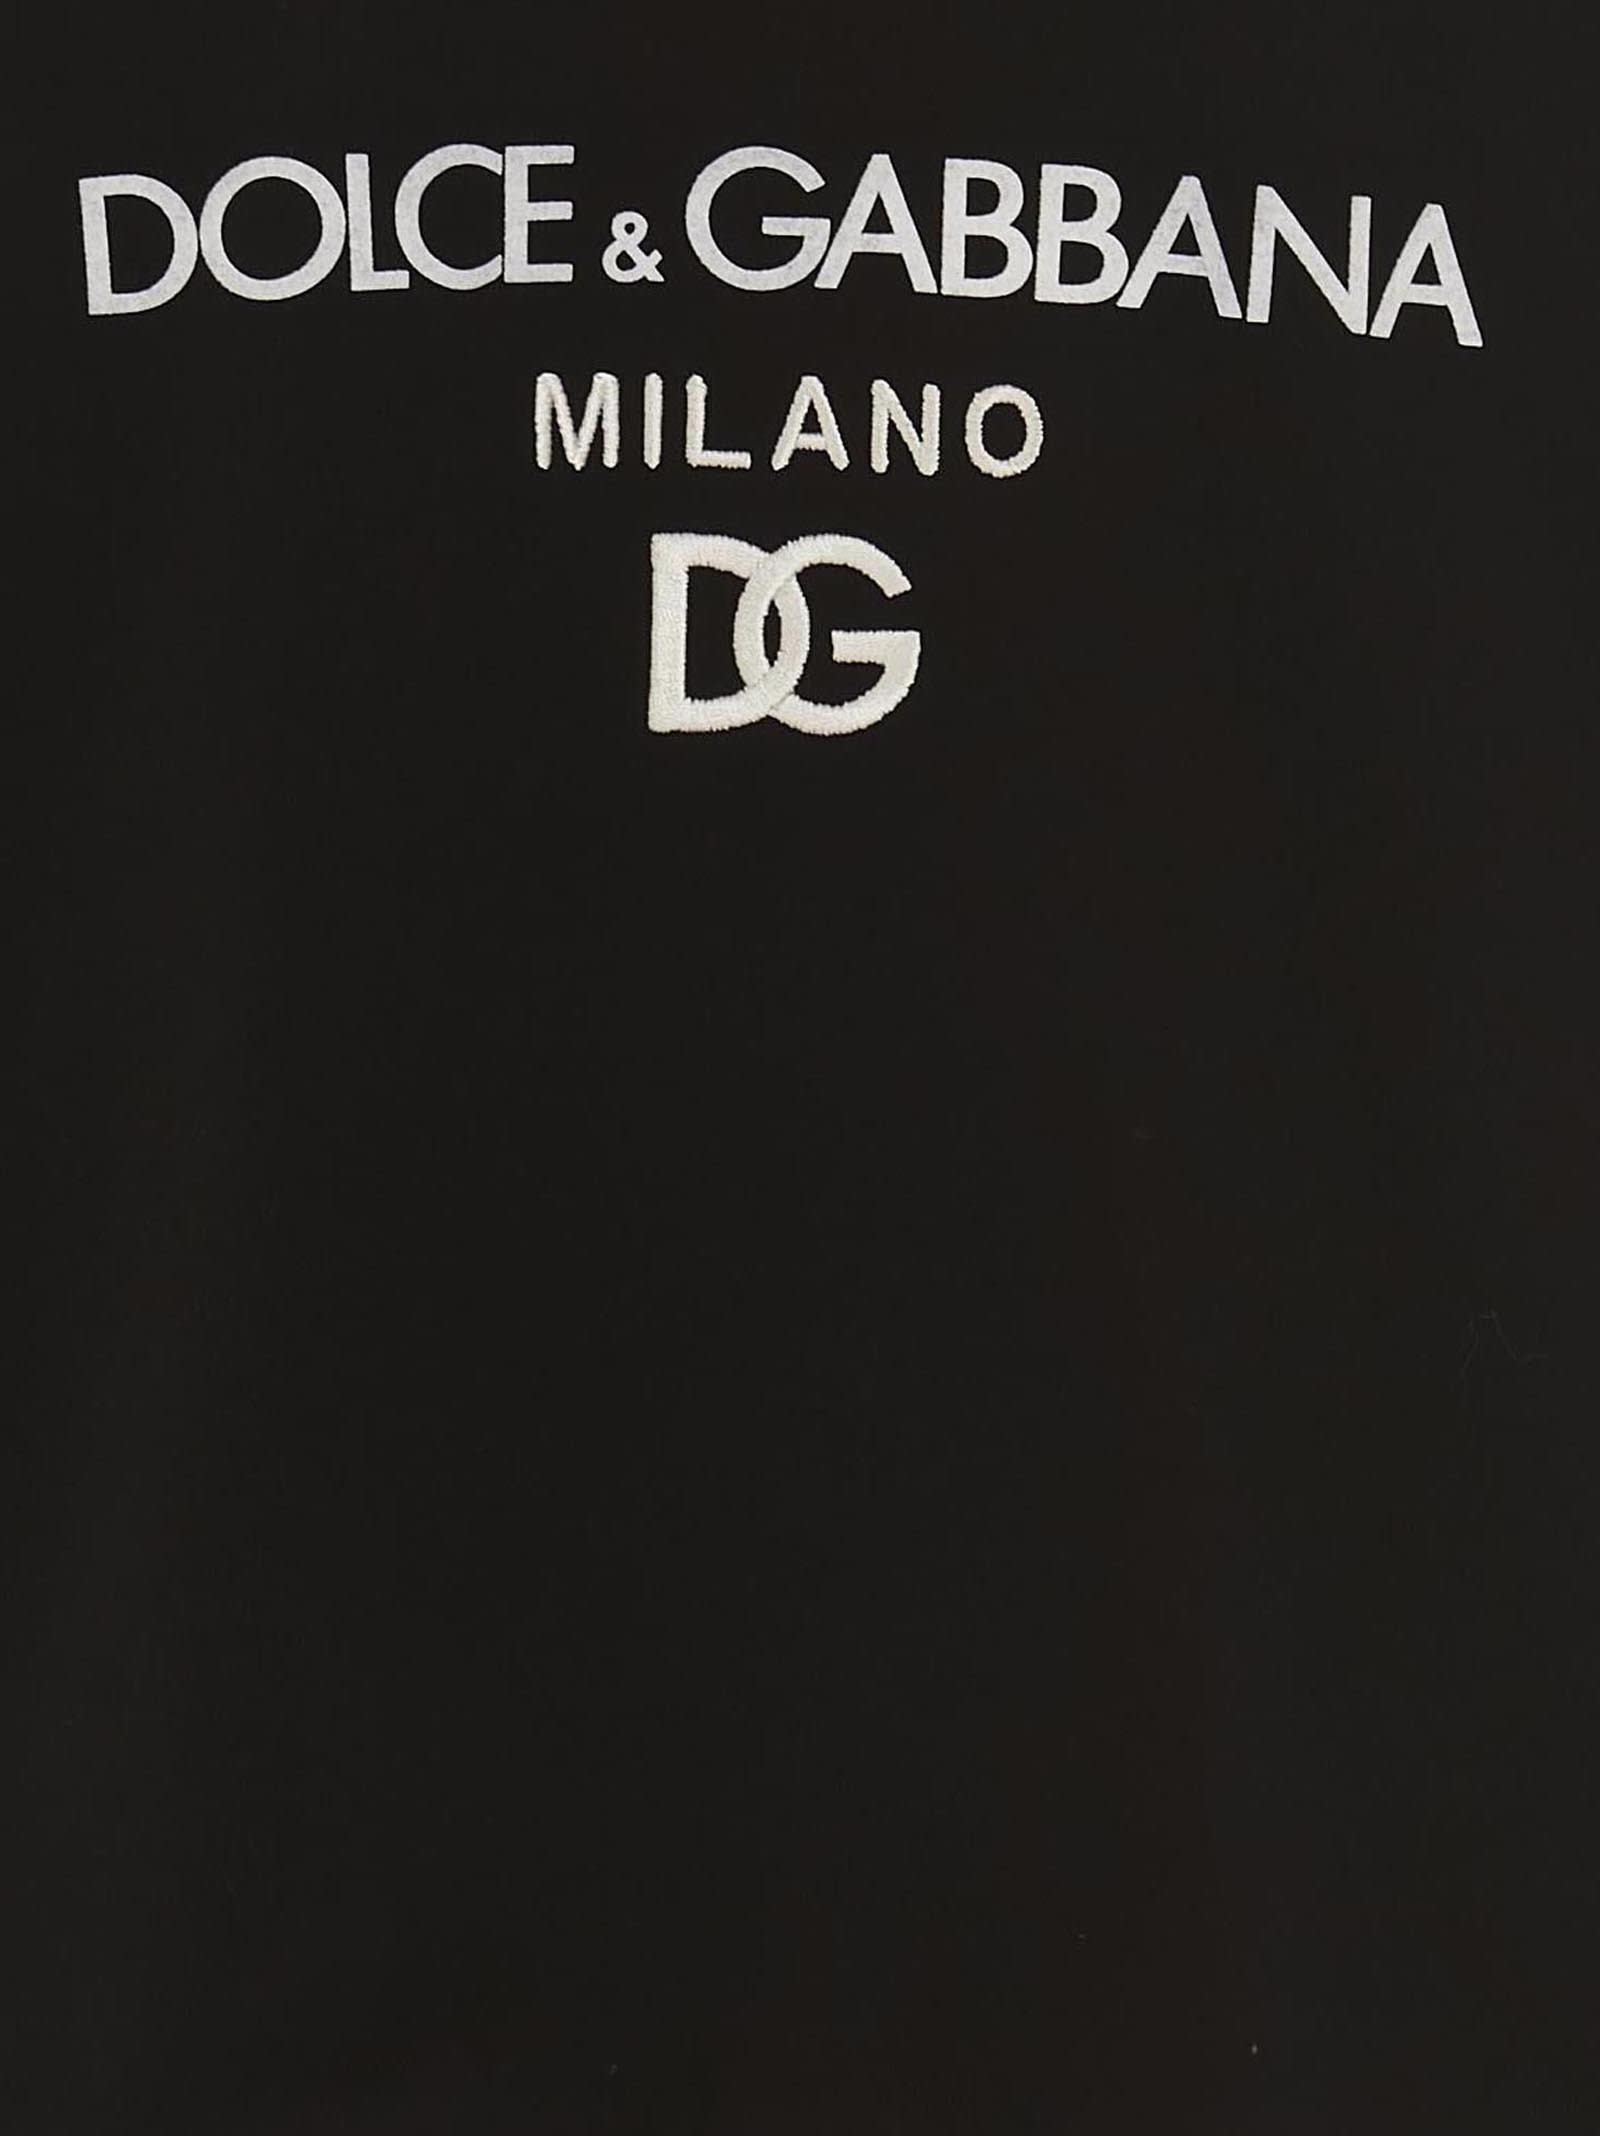 Shop Dolce & Gabbana Essential Sweatshirt In White/black